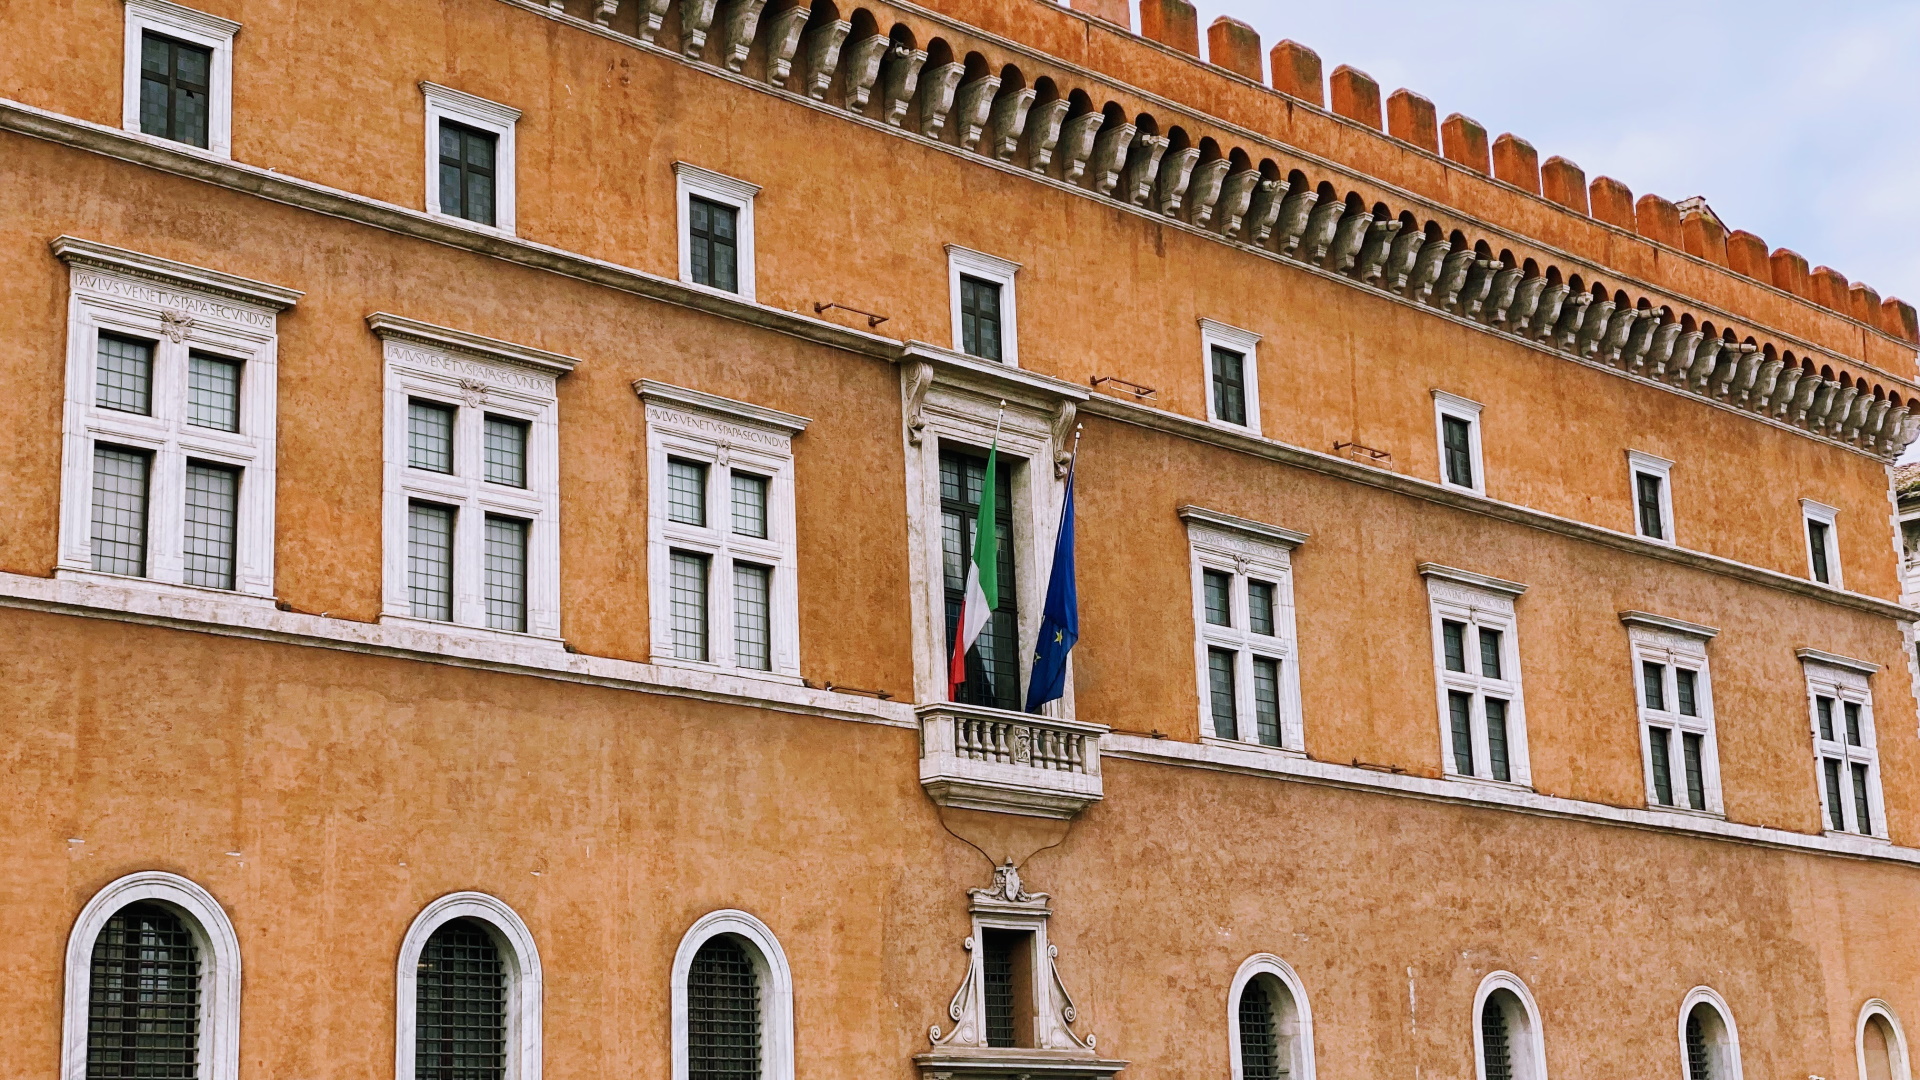 Museo Nazionale del Palazzo di Venezia